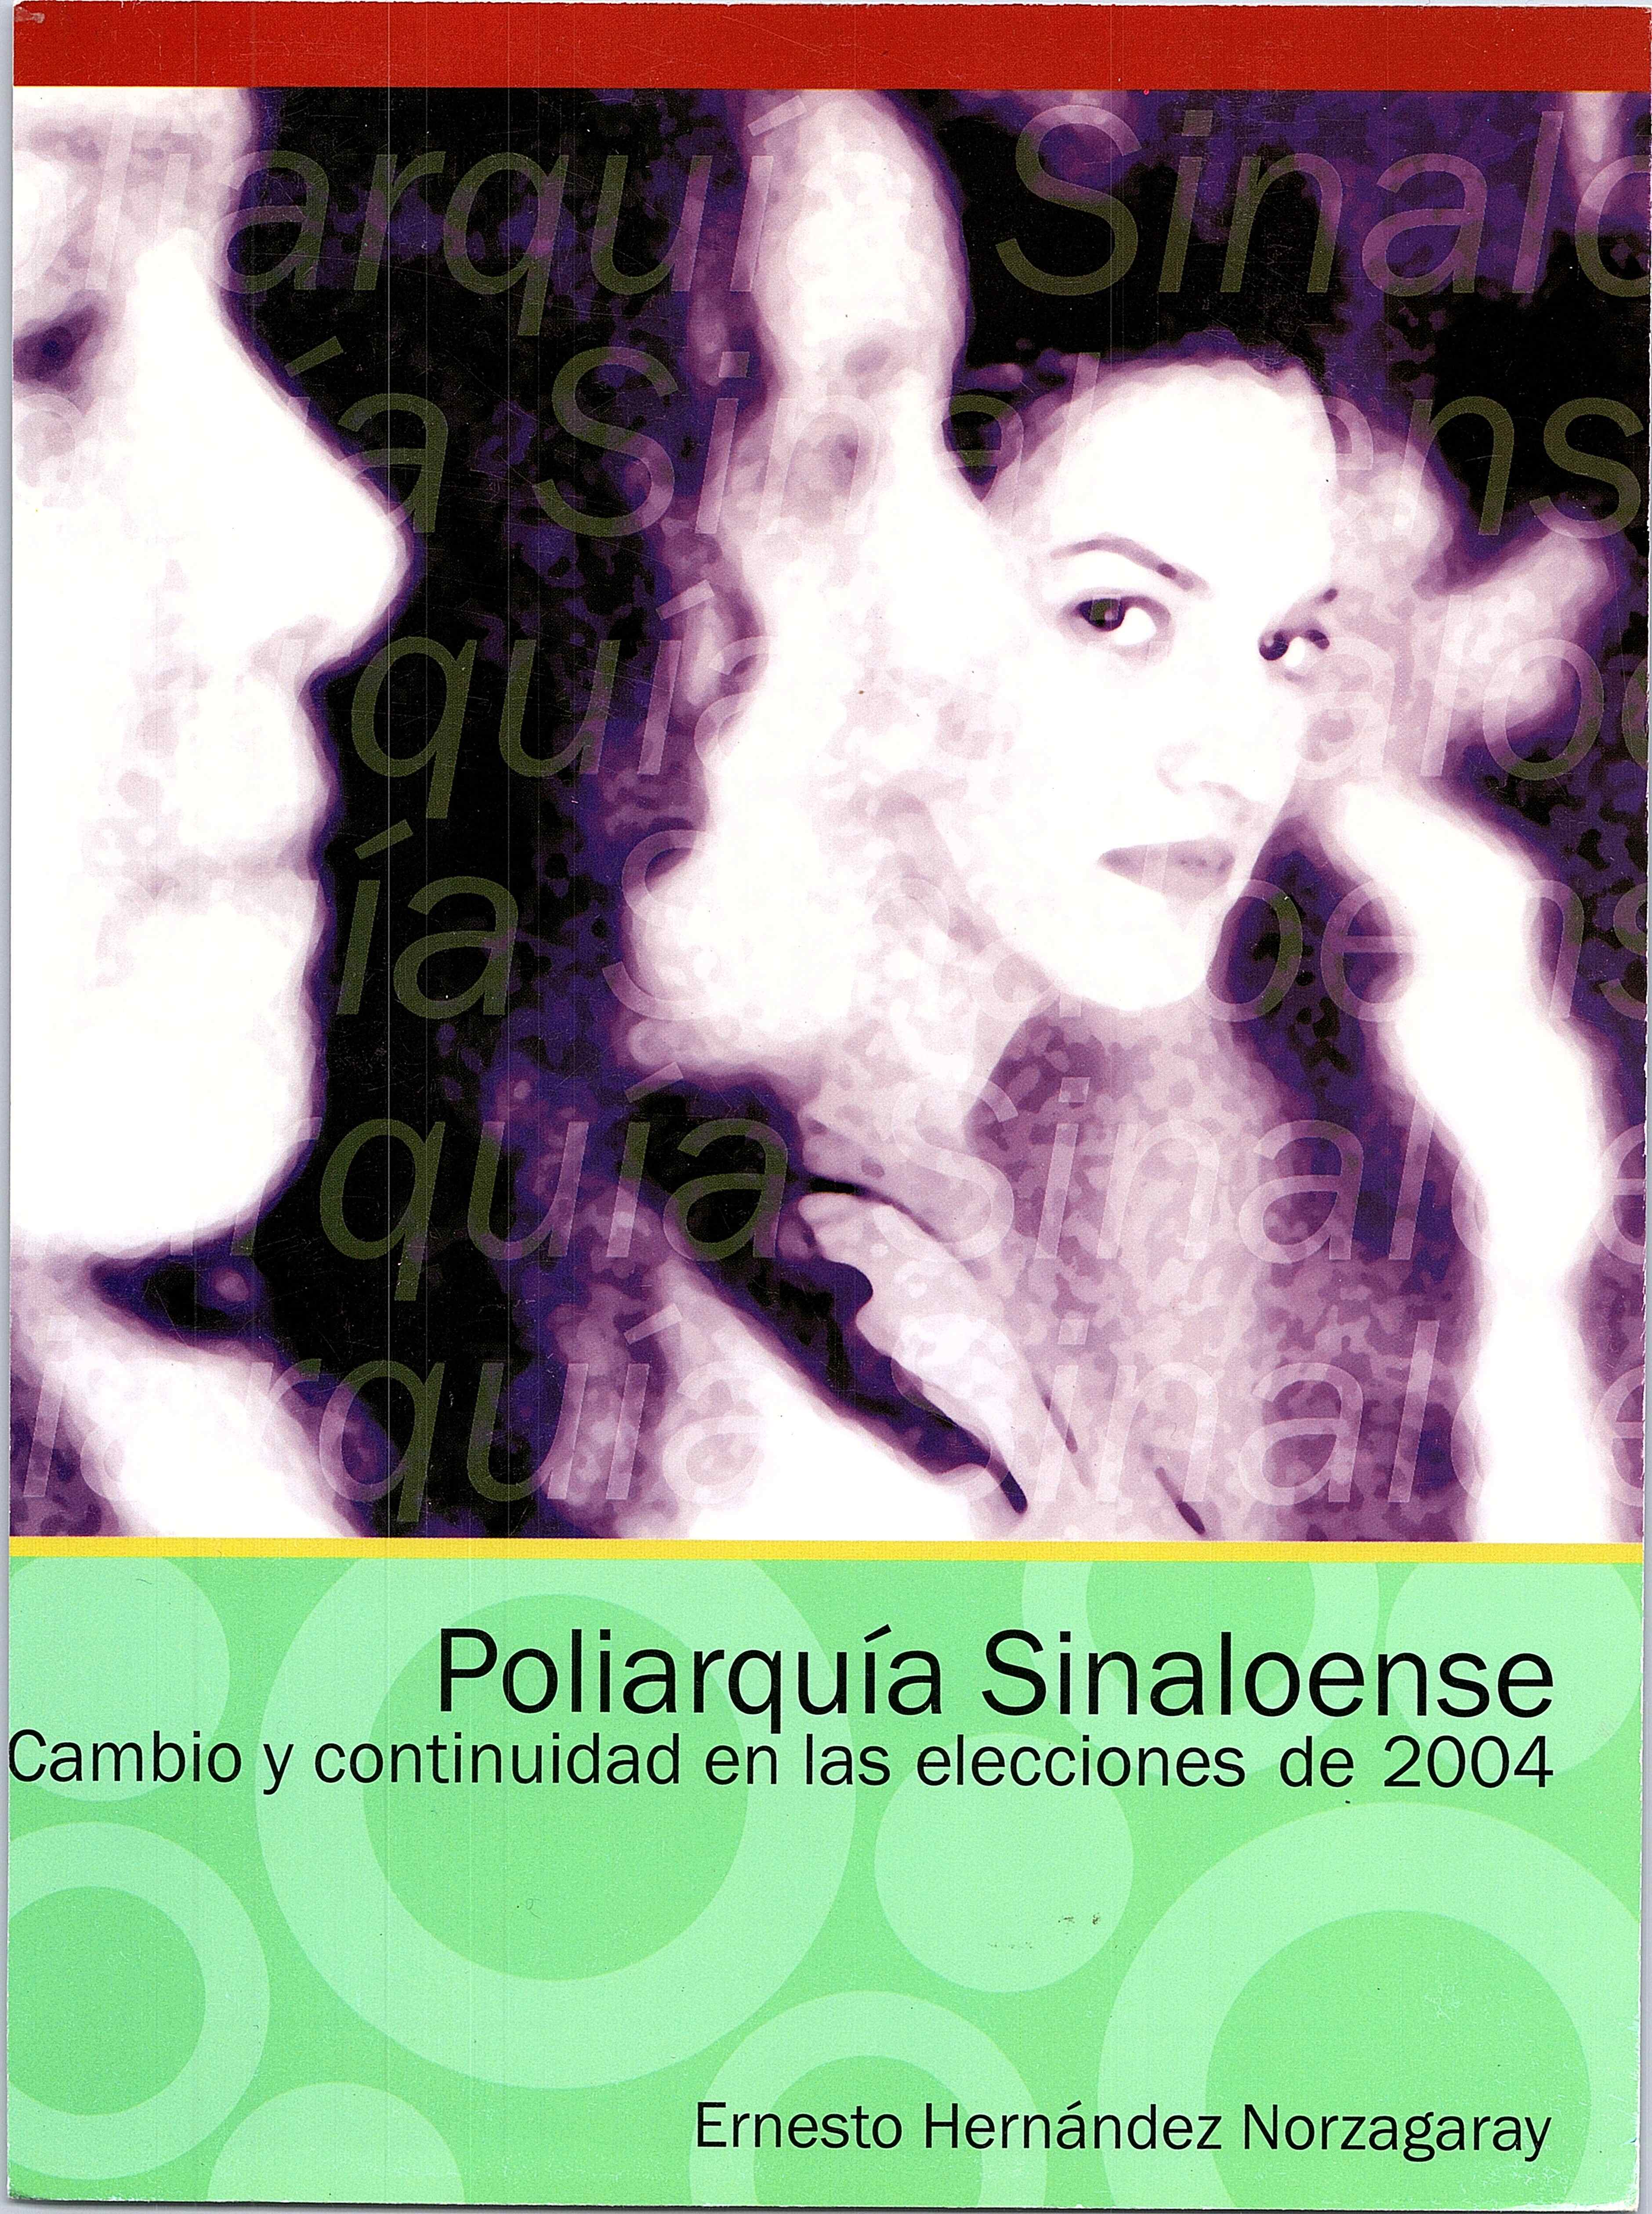 Poliarquía Sinaloense, cambio y continuidad en las elecciones 2004